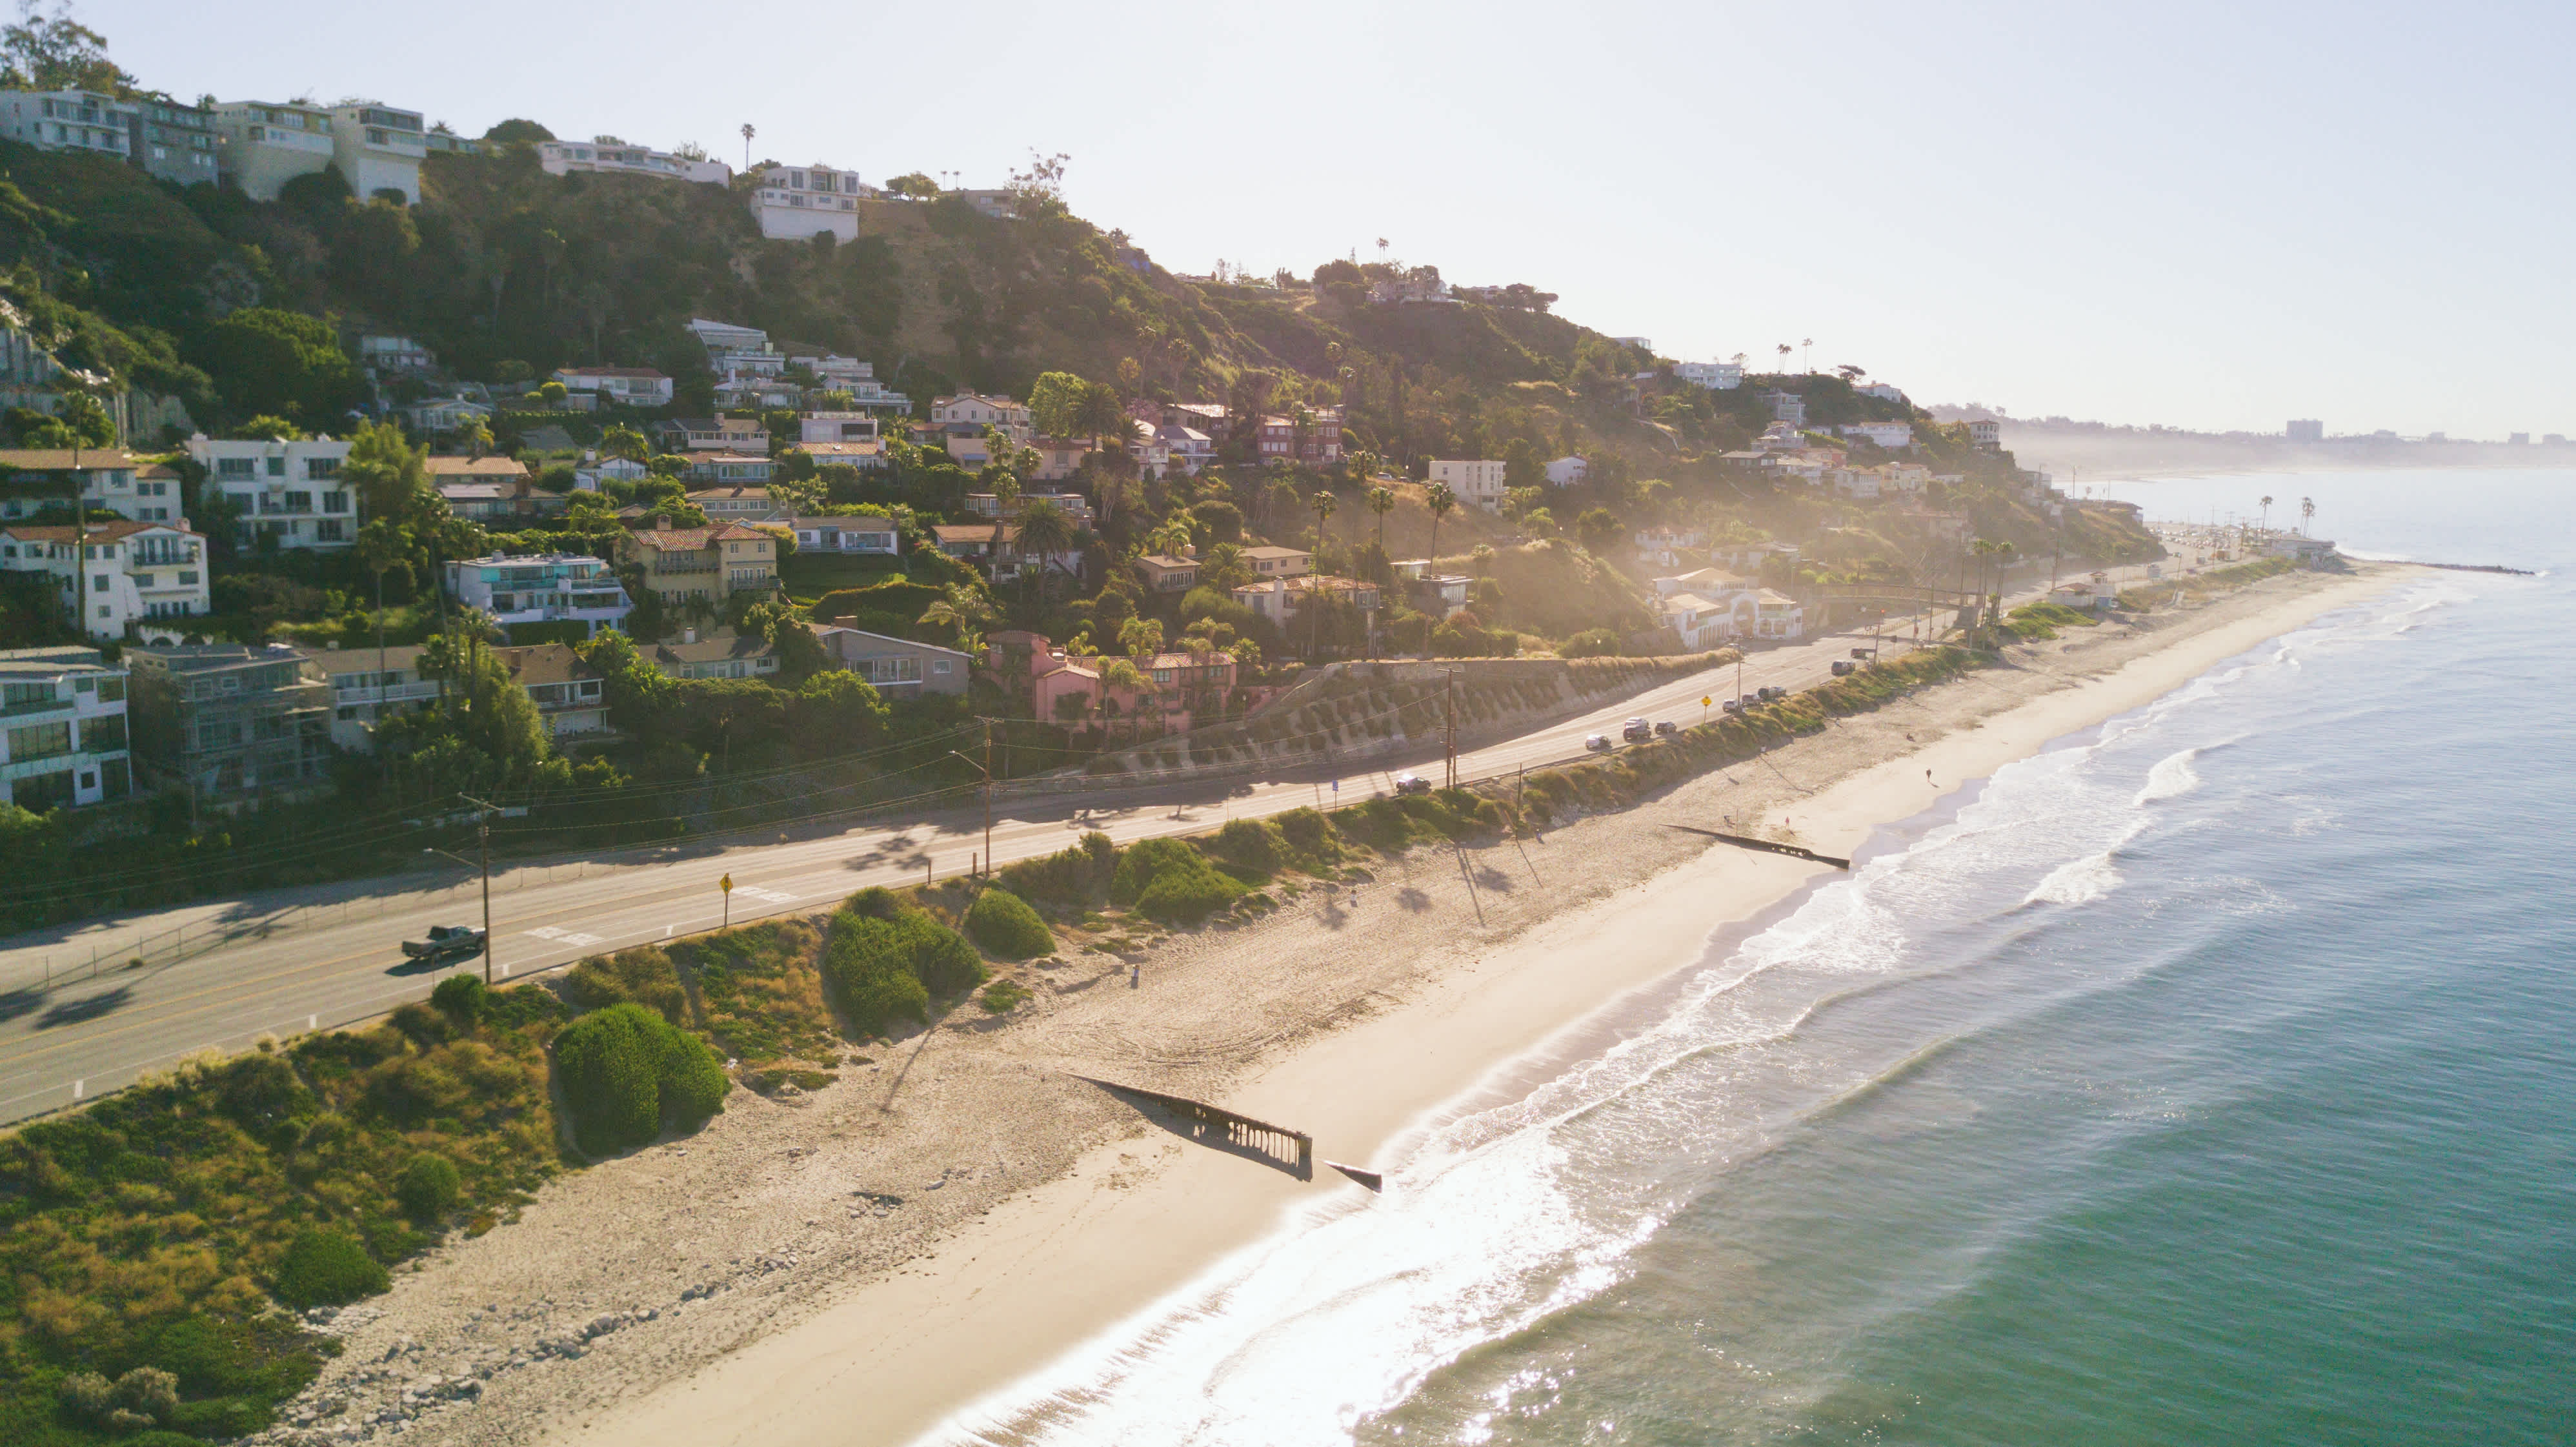 
Beach-Front-Häuser in Malibu, Kalifornien